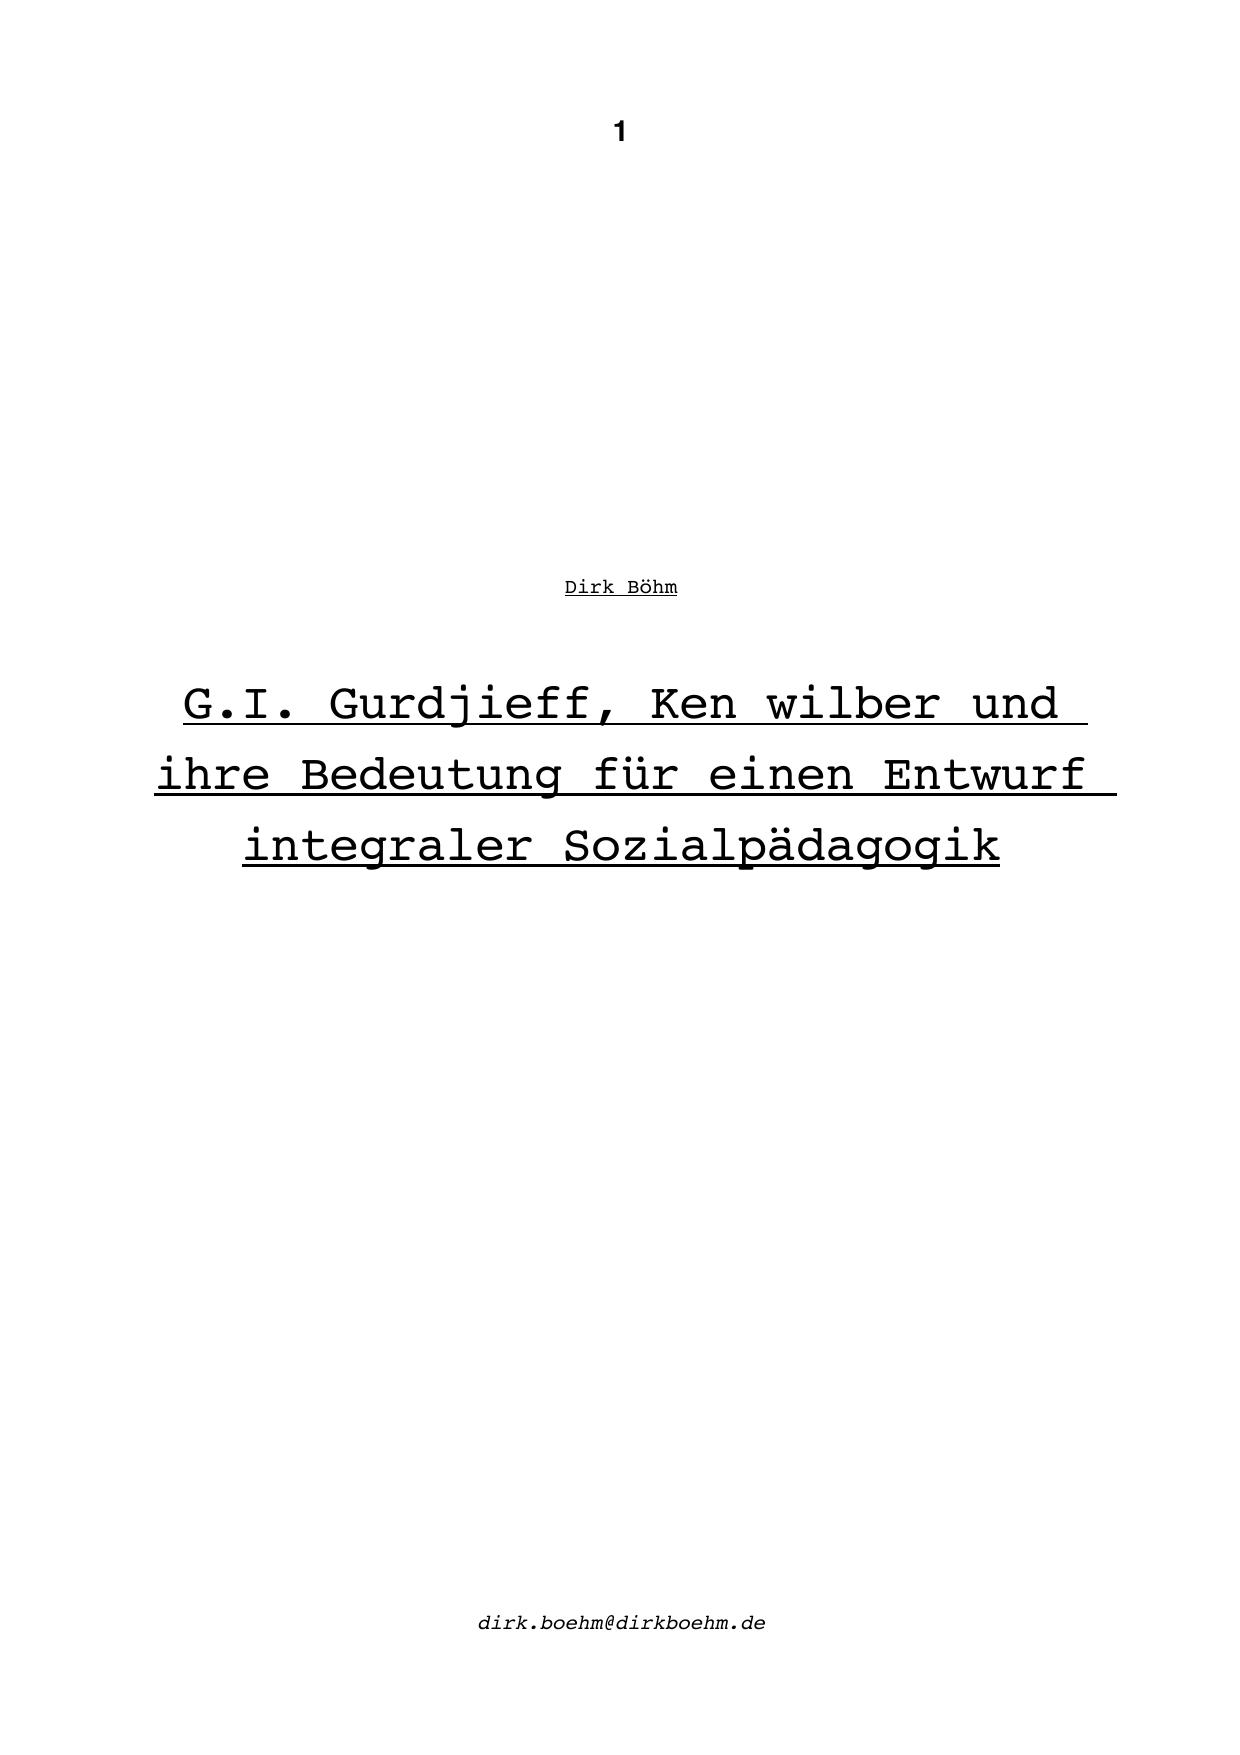 G.I. Gurdjieff Ken Wilber und ihre Bedeutung für einen Entwurf integraler Sozialpädagogik - Paper